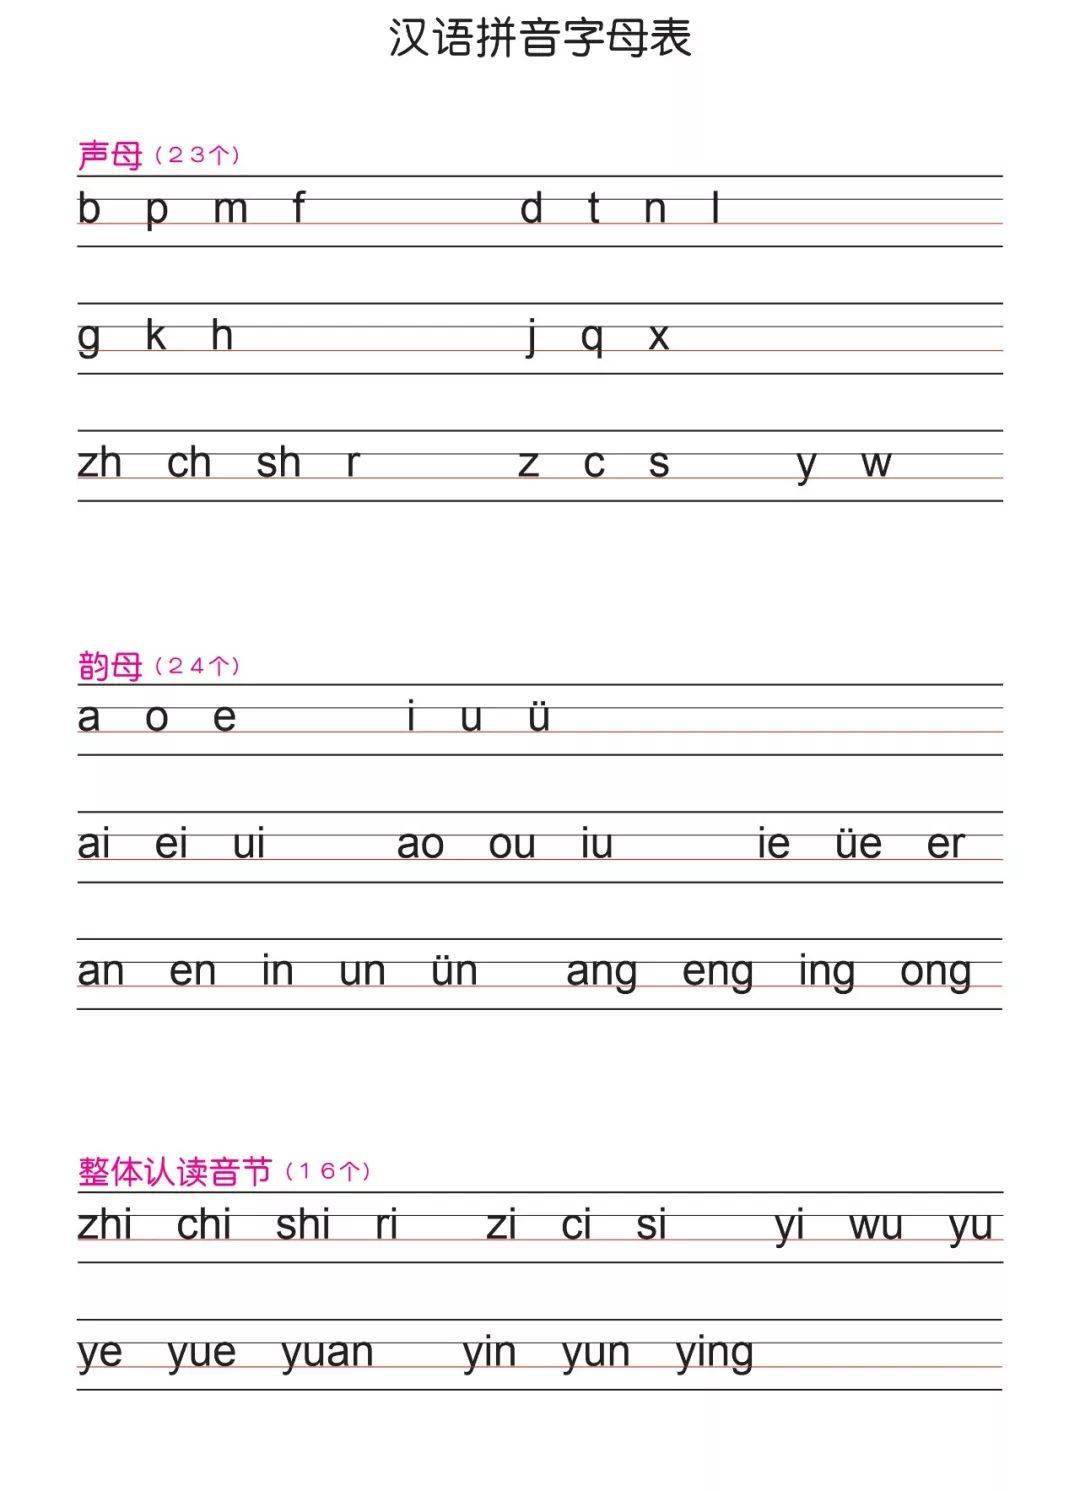 一年级语文必学拼音拼读+书写规则，孩子开学就会用到!(附汉语拼音练习本，可下载打印)